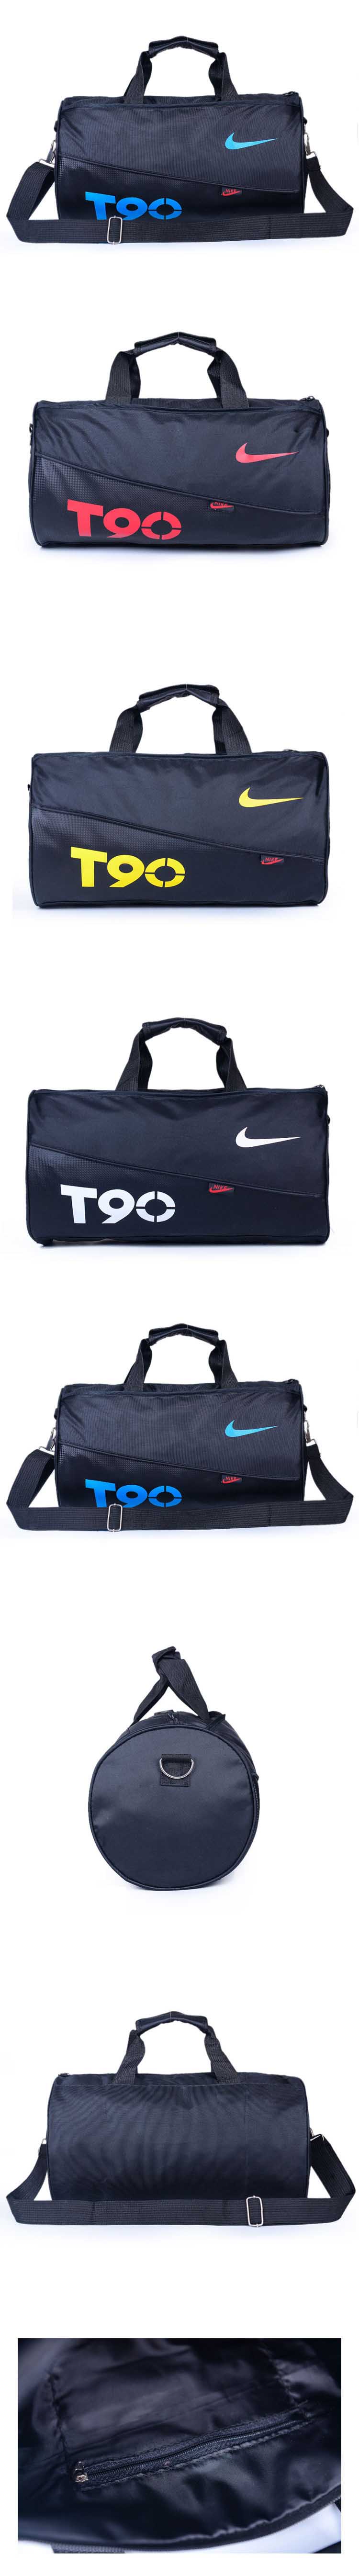 cari tas olahraga merk nike ? pfp menyediakan berbagai model tas olahraga branded seperti nike dengan banyak warna, klik dan pesan online sekarang